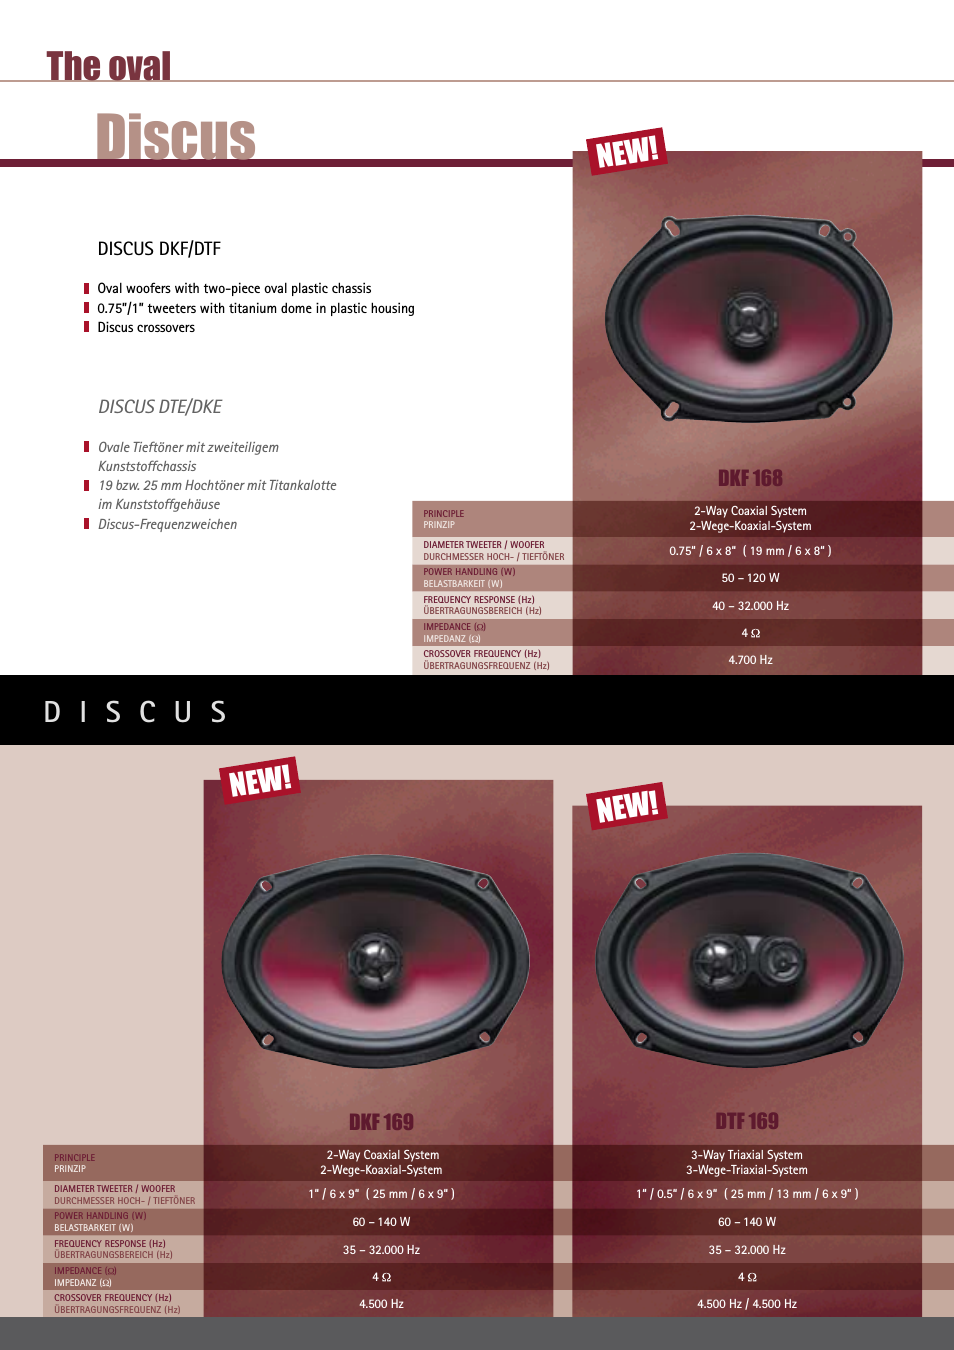 DISCUS Series DKC 108 DKC108